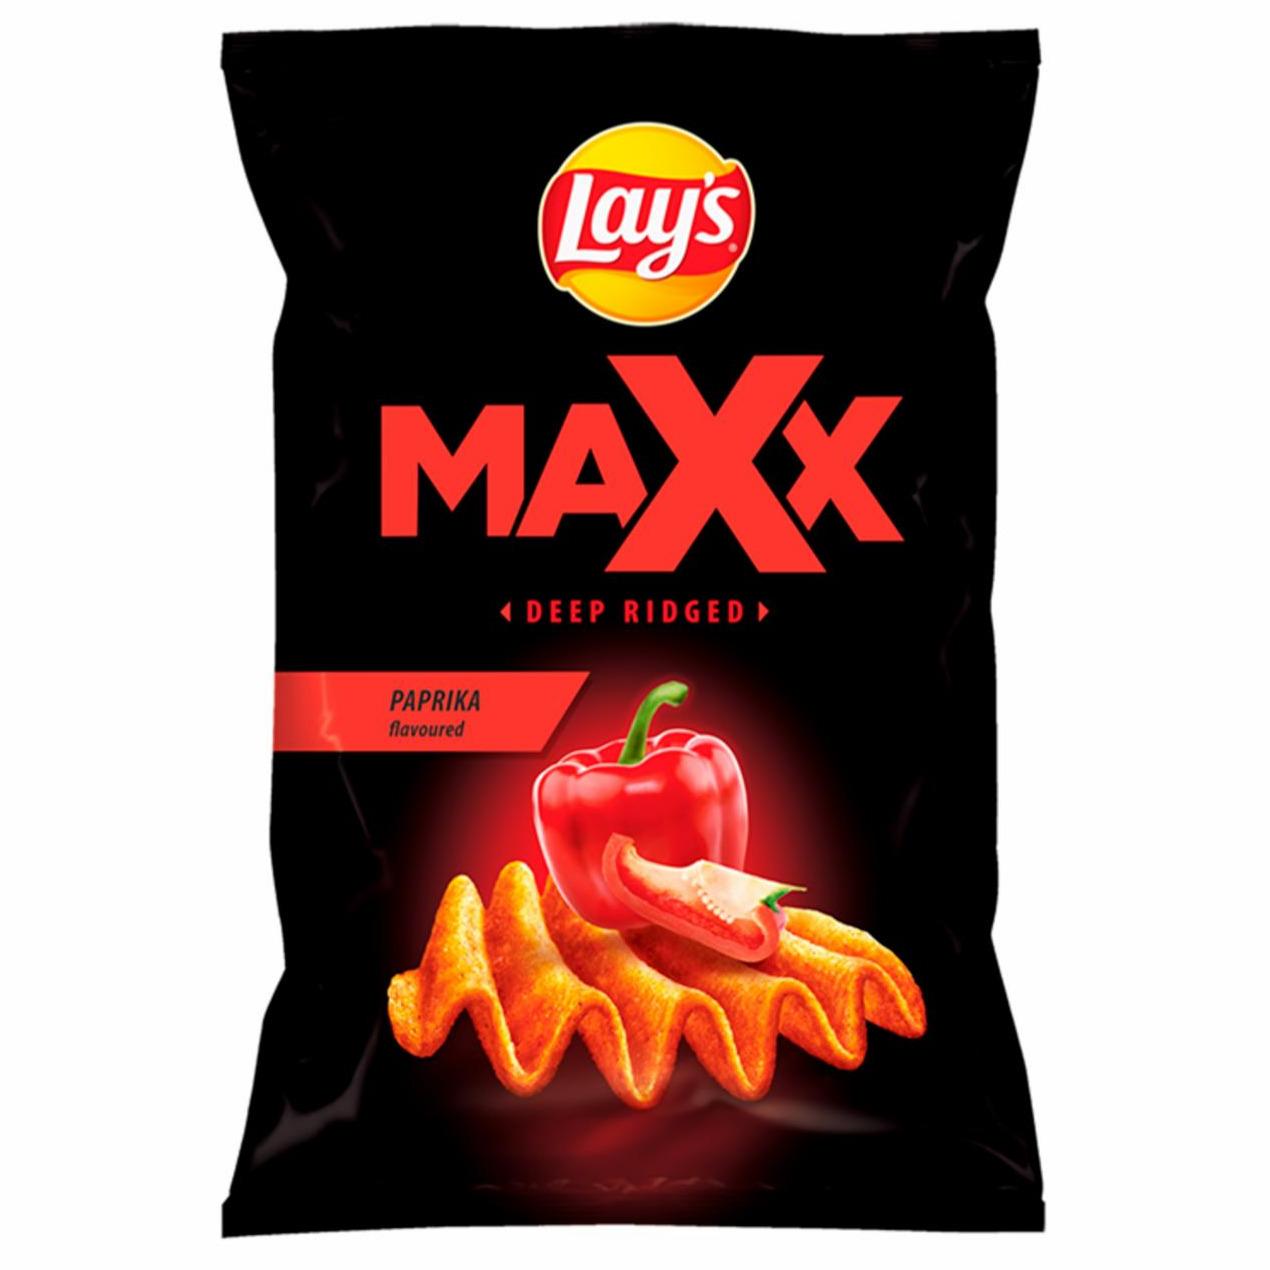 Zdjęcia - Lay's Maxx Chipsy ziemniaczane o smaku papryki 130 g